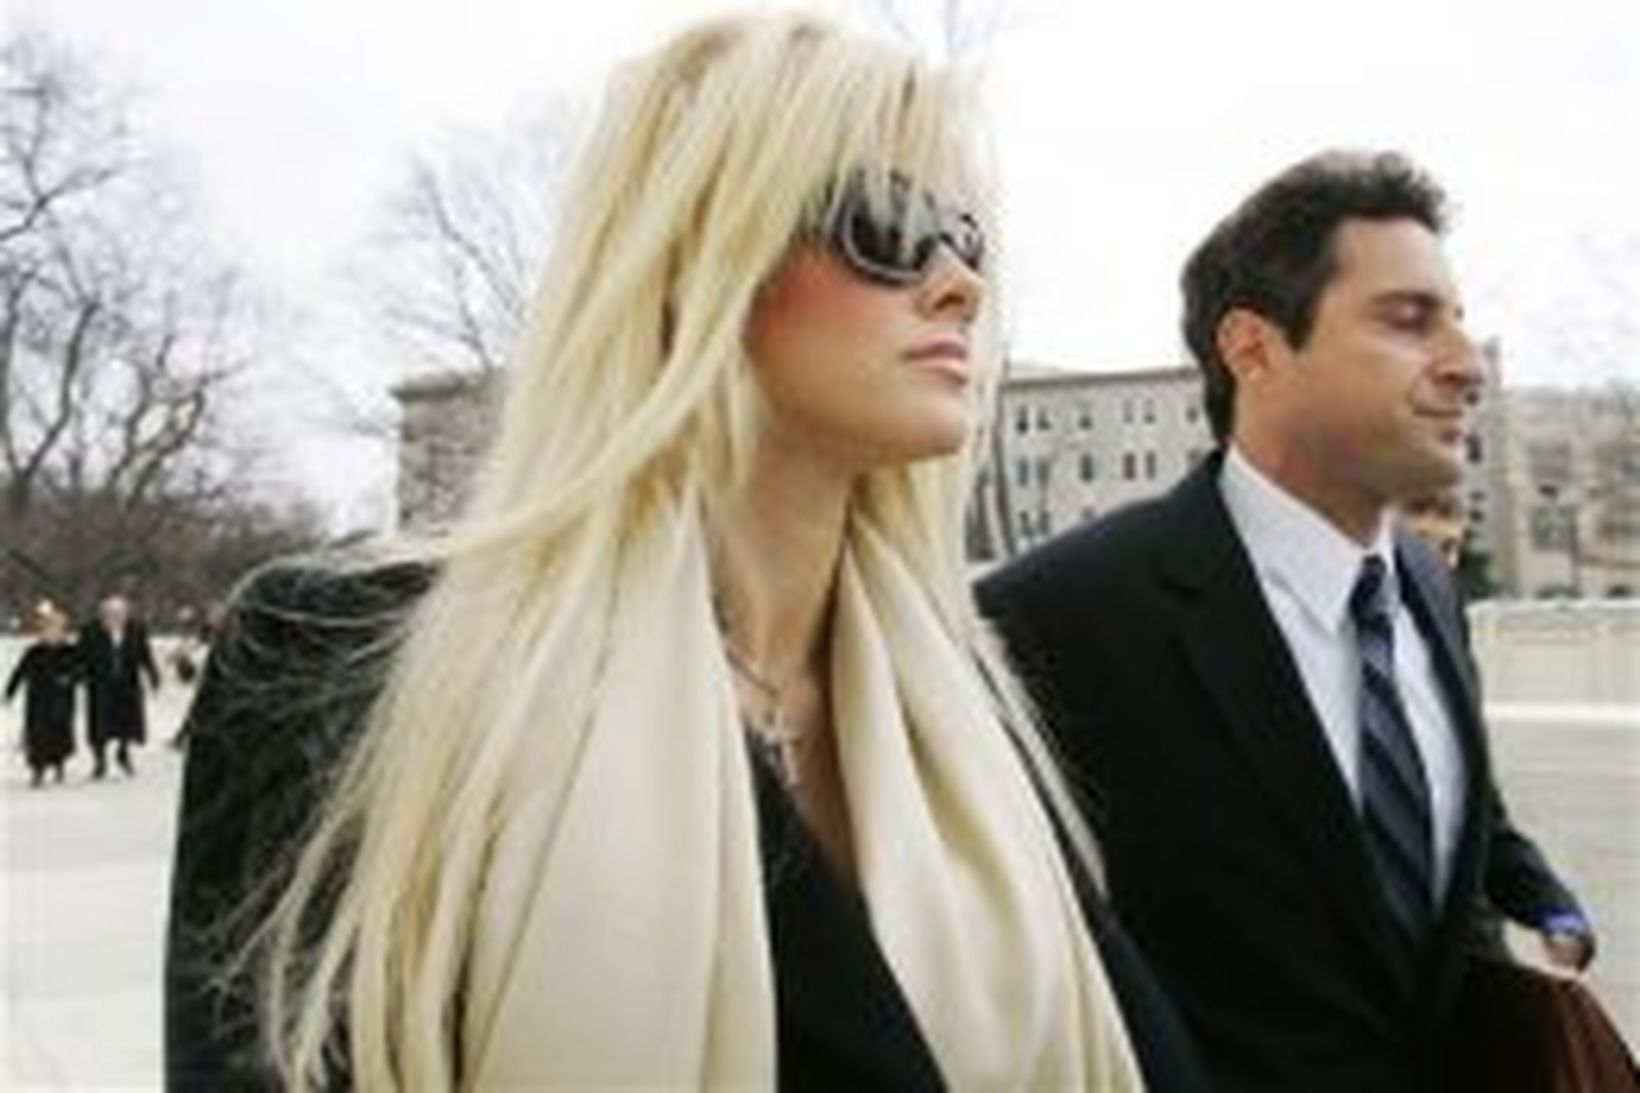 Anna Nicole Smith ásamt lögmanni sínum.